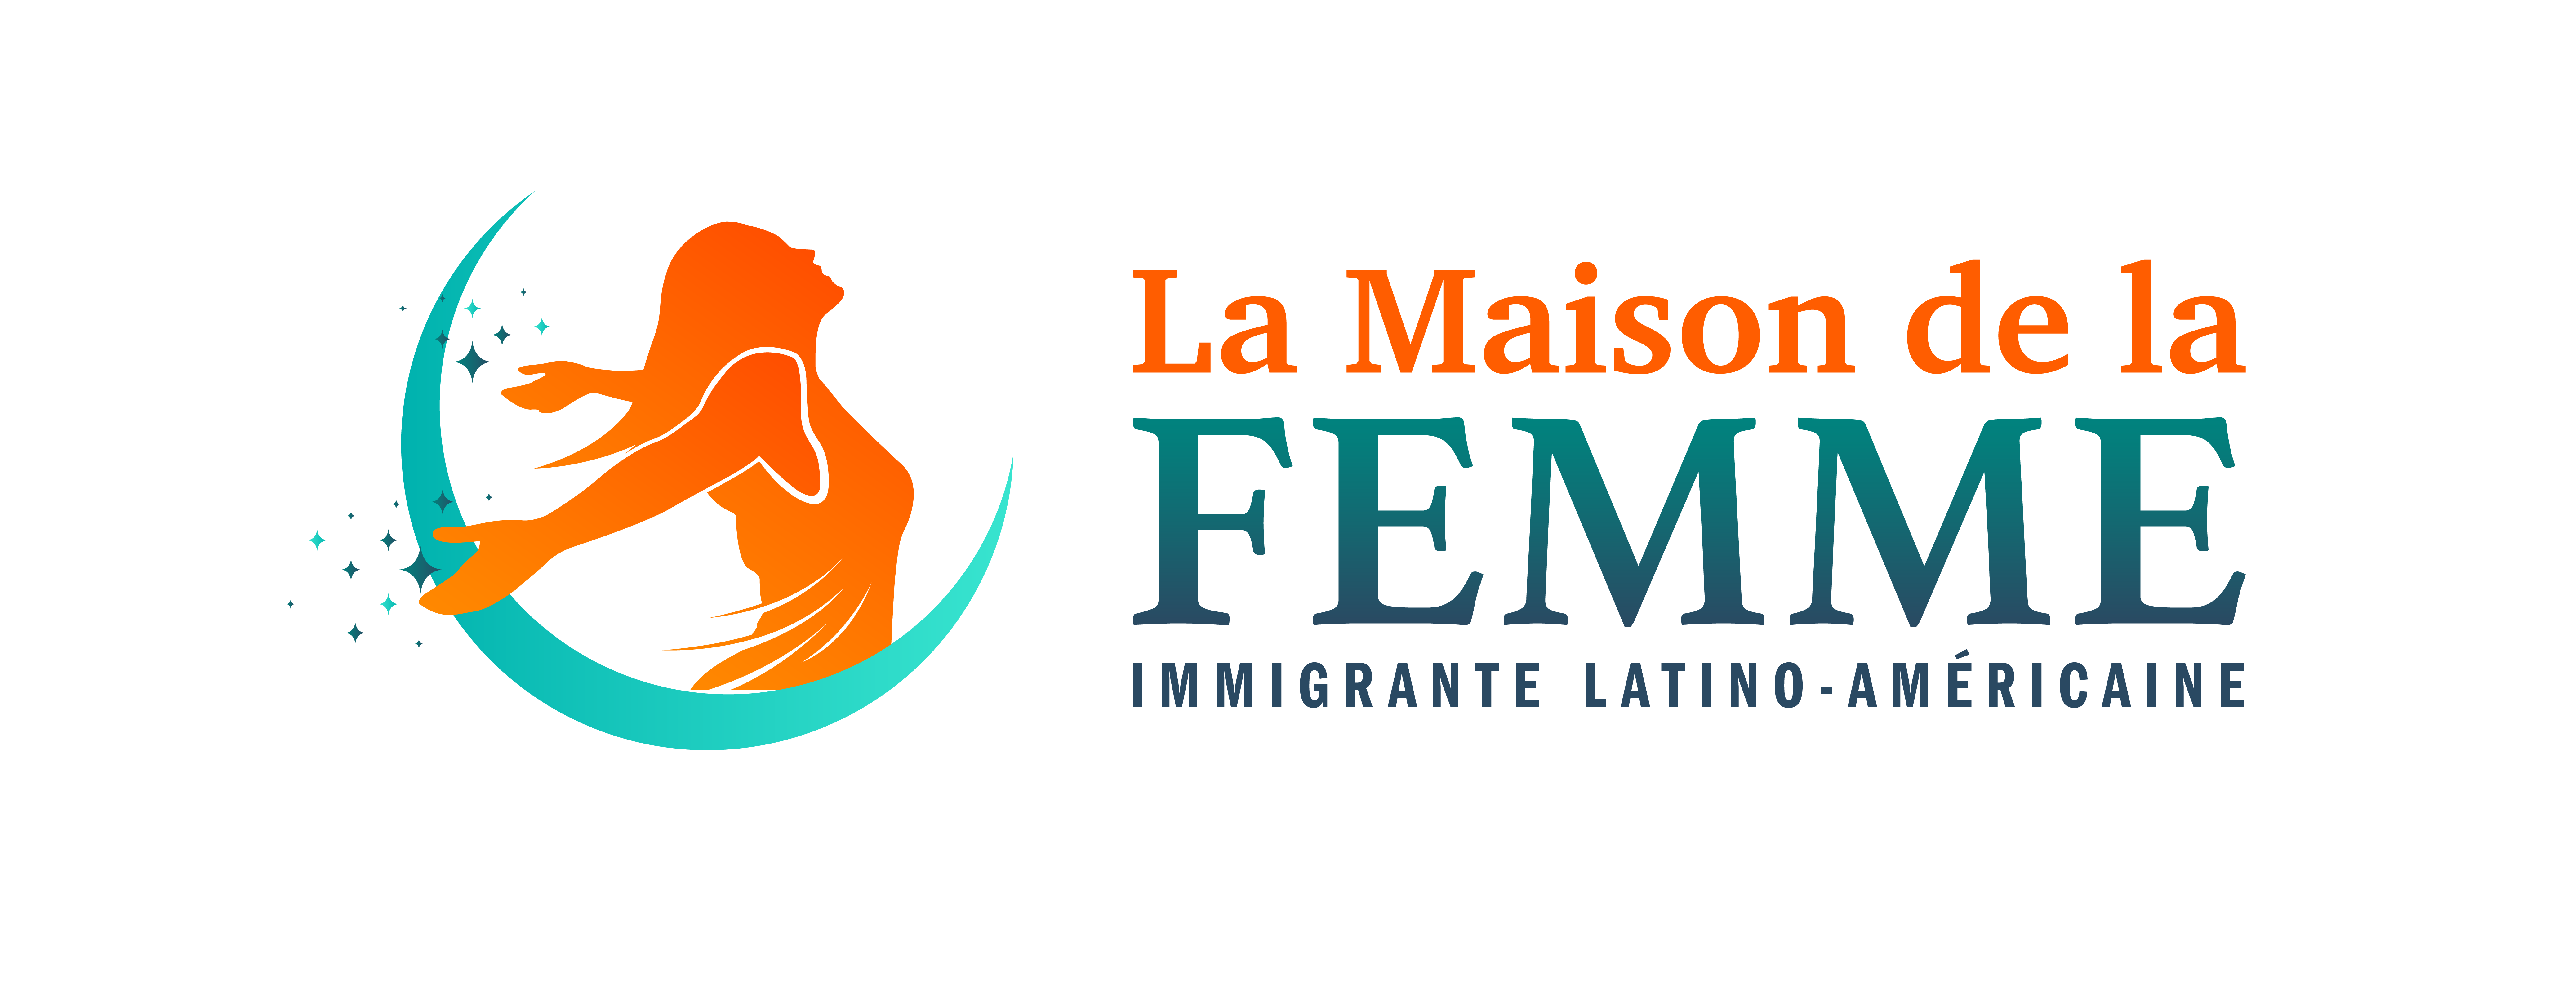 Casa de la Mujer Inmigrante Latina